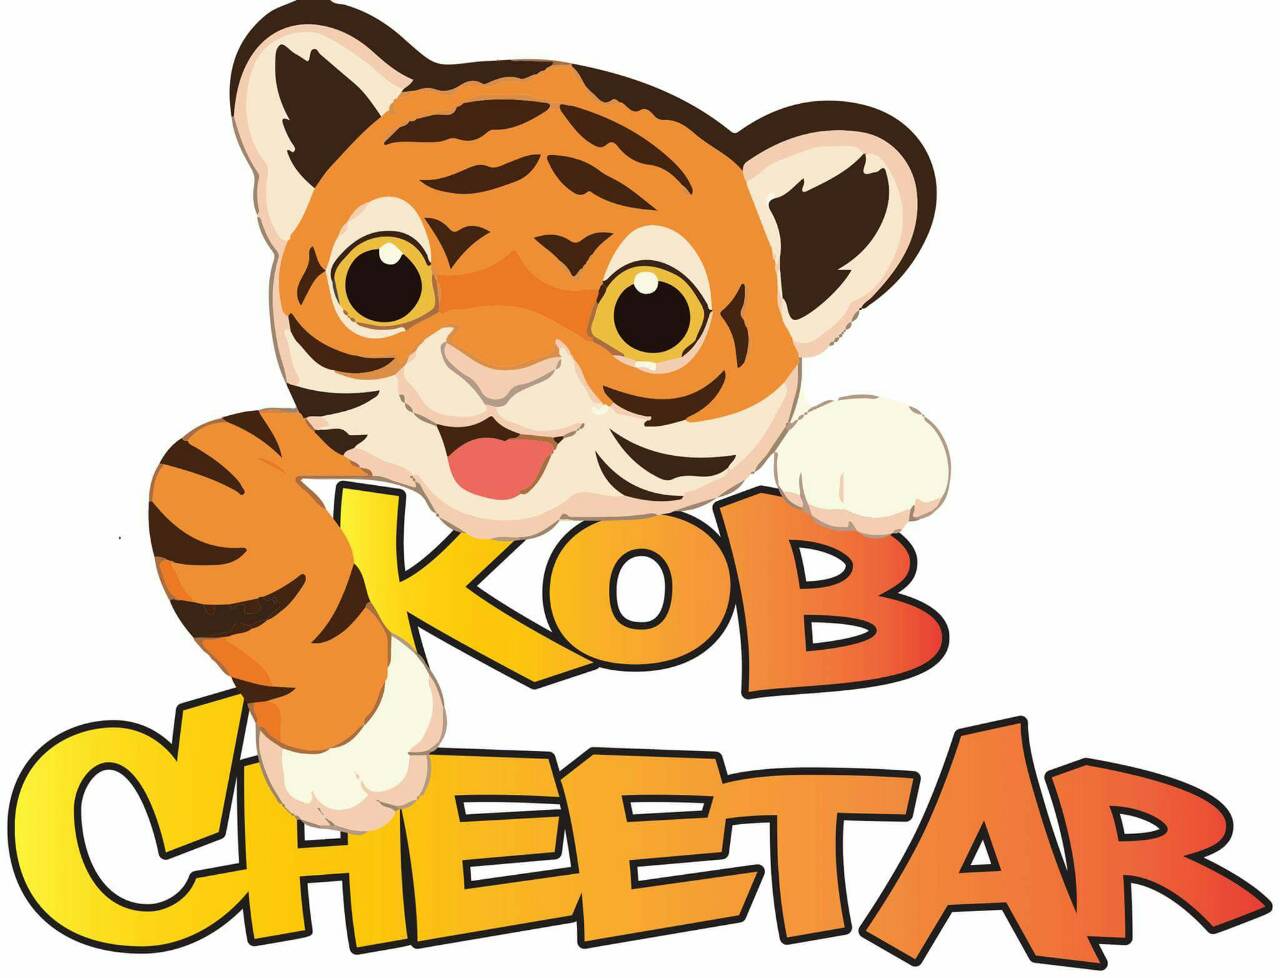 คณะกรรมการชุมชนฯ และ นักกีฬาทุกๆ คน ขอขอบคุณ

[b]น้าต๋อง แมวดั้นด้น เหยื่อ KOB CHEETAR [/b] 

ที